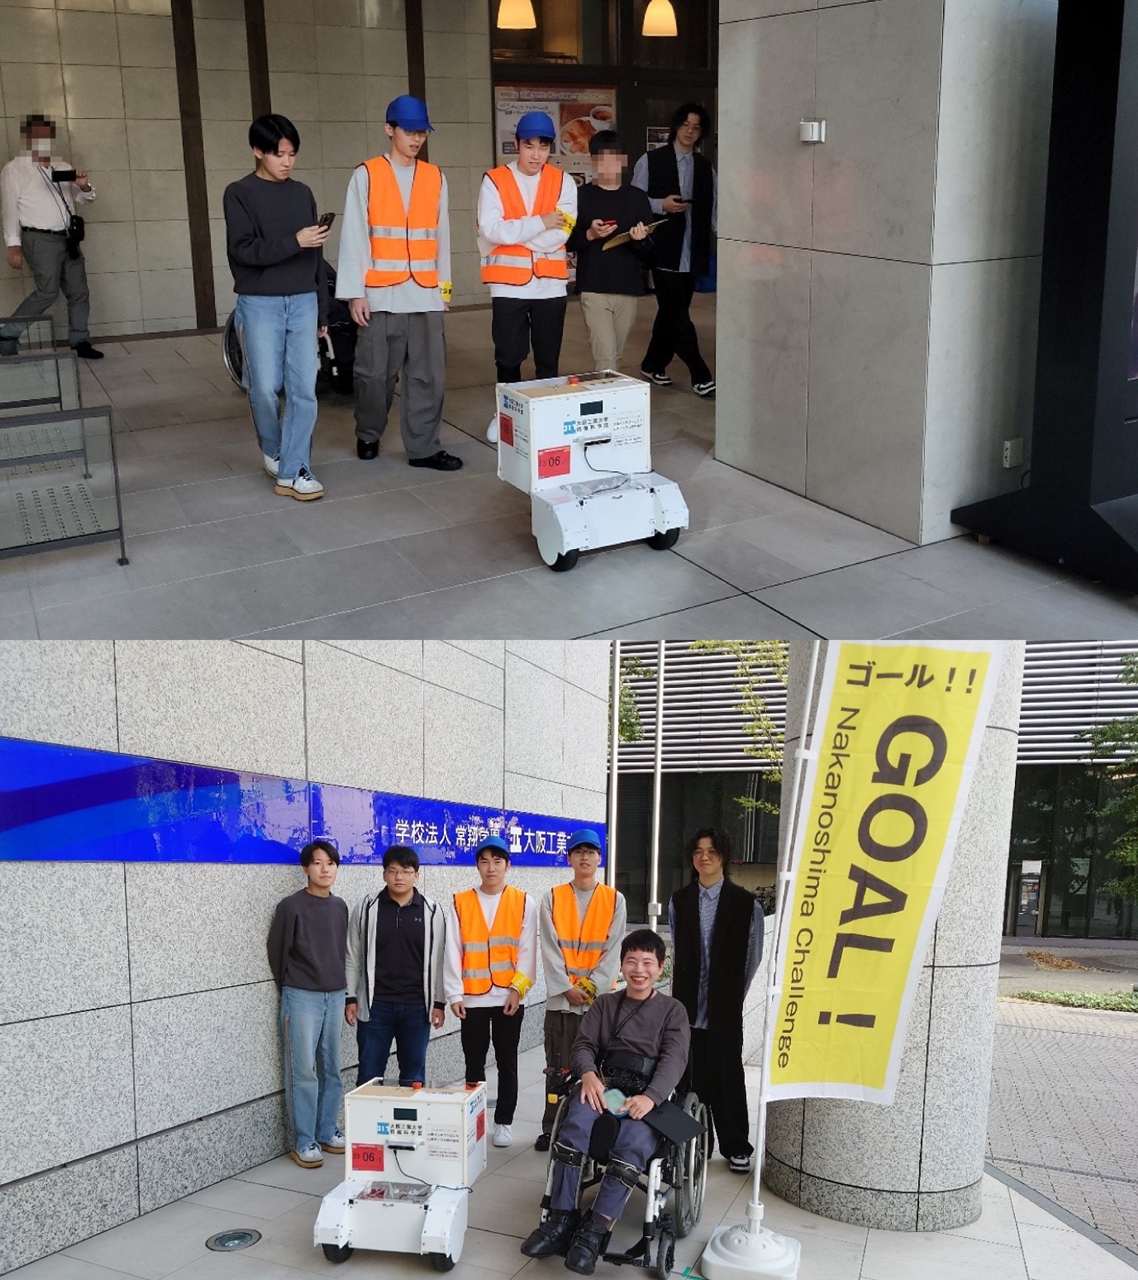 （上段）梅田キャンパス内を自律走行する「SmartBot v2」、（下段）見事に完走した情報科学部の「SmartBot v2」とその開発メンバー